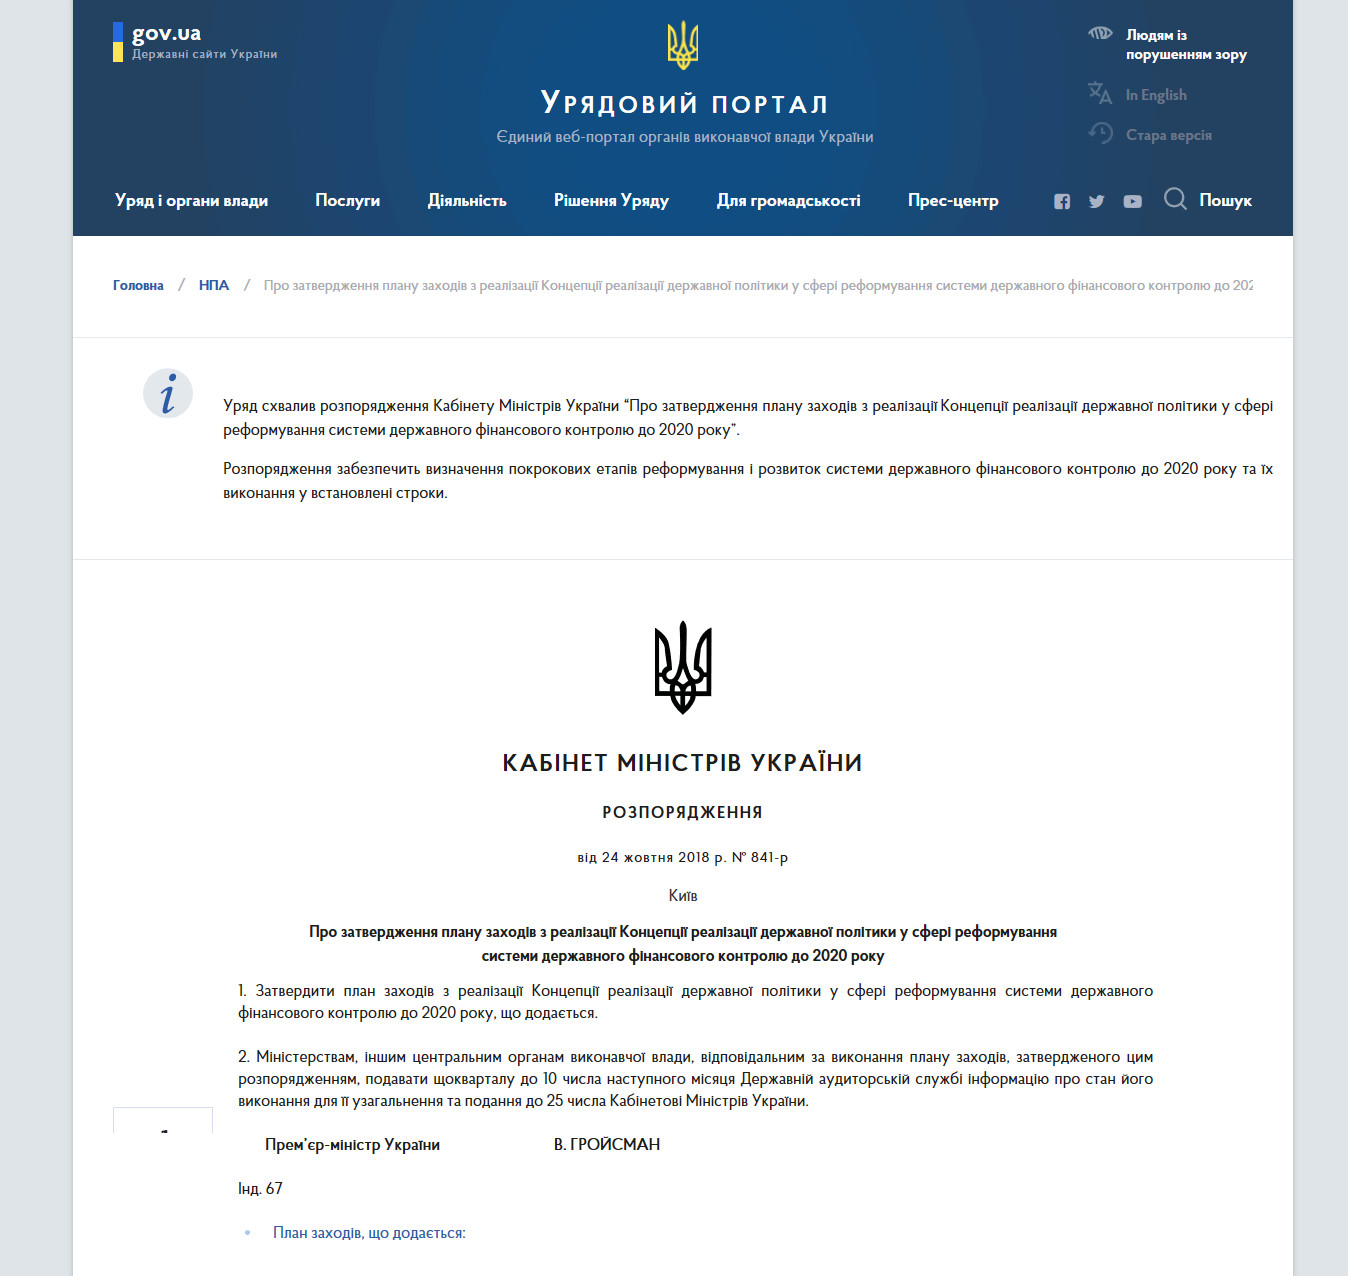 https://www.kmu.gov.ua/ua/npas/pro-zatz-realizaciyi-koncepciyi-realizaciyi-derzhavnoyi-politiki-u-sferi-reformuvannya-sistemi-derzhavnogo-finansovogo-kontrolyu-do-2020-roku